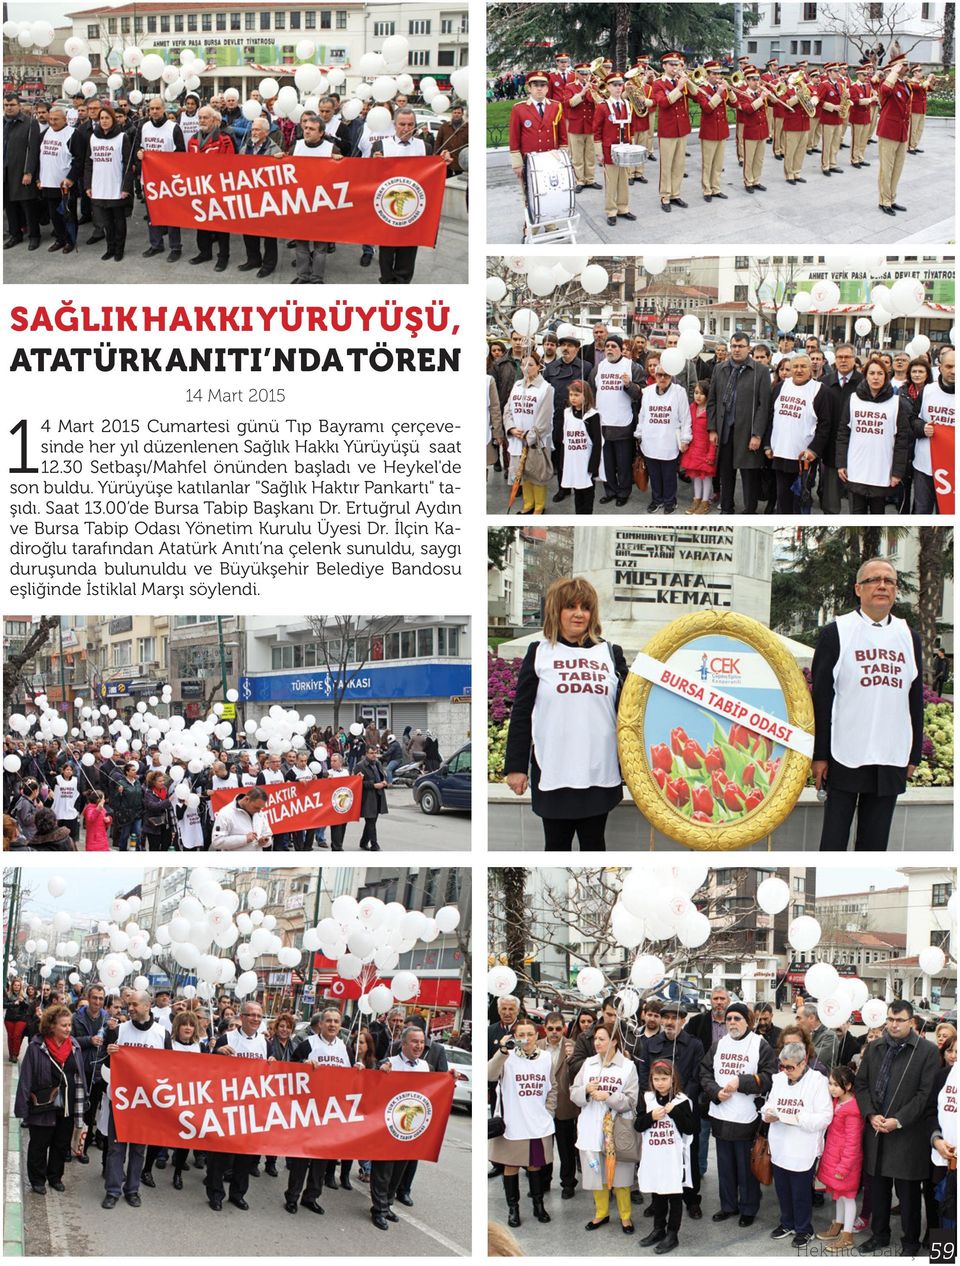 Yürüyüşe katılanlar "Sağlık Haktır Pankartı" taşıdı. Saat 13.00 de Bursa Tabip Başkanı Dr.